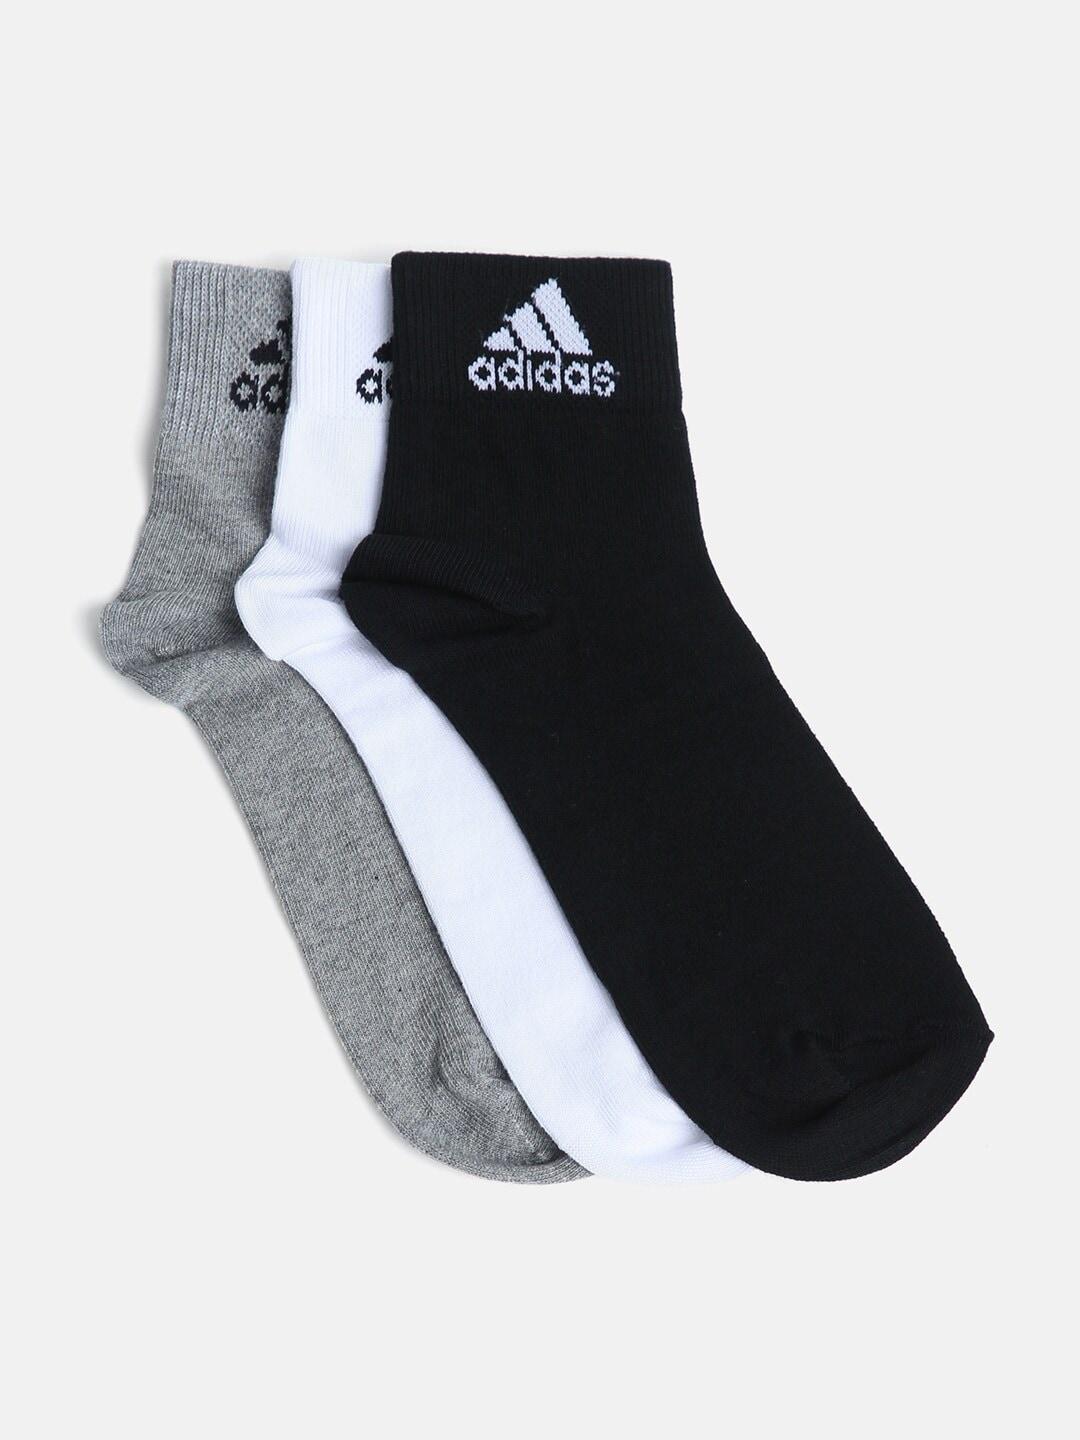 adidas-men-pack-of-3-ankle-length-socks